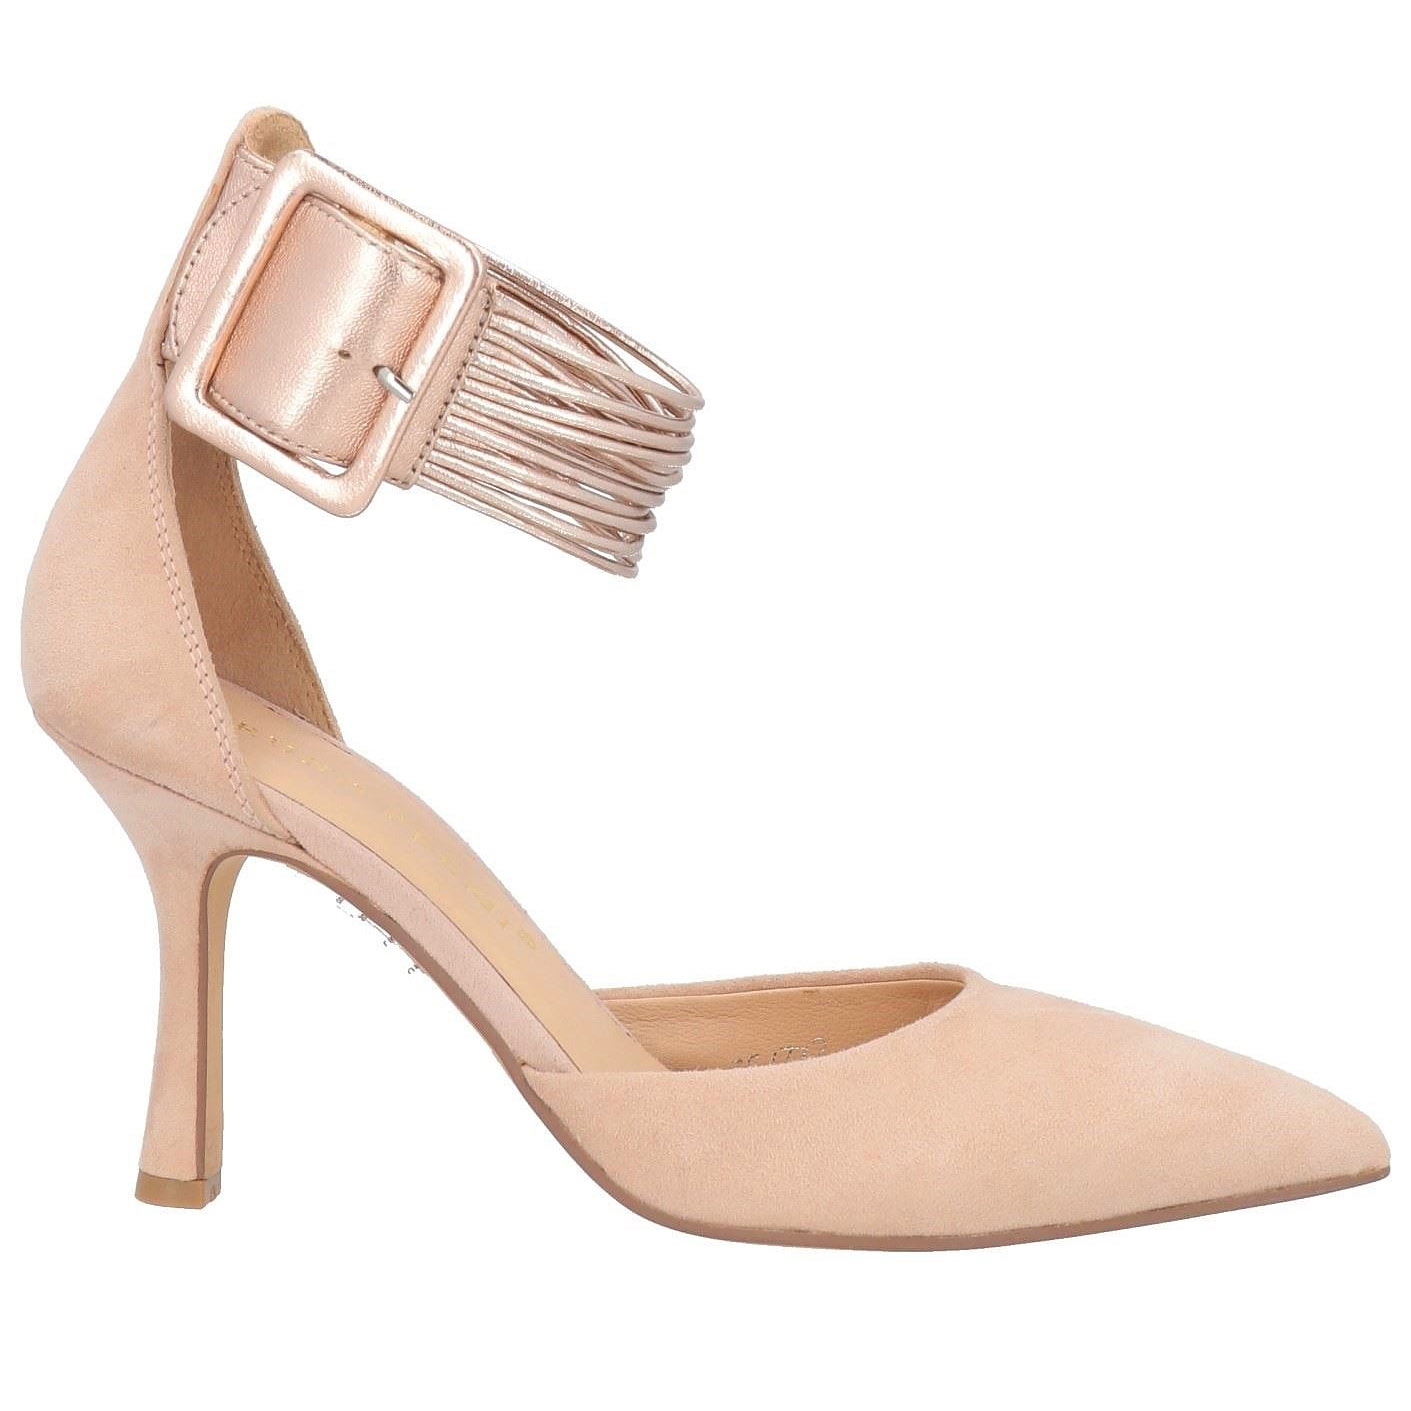 Туфли Bruno Premi, пудрово-розовый туфли на высоком каблуке 18 см туфли на высоком каблуке туфли на высоком каблуке подмодели для съемки фотографий танцевальная обувь